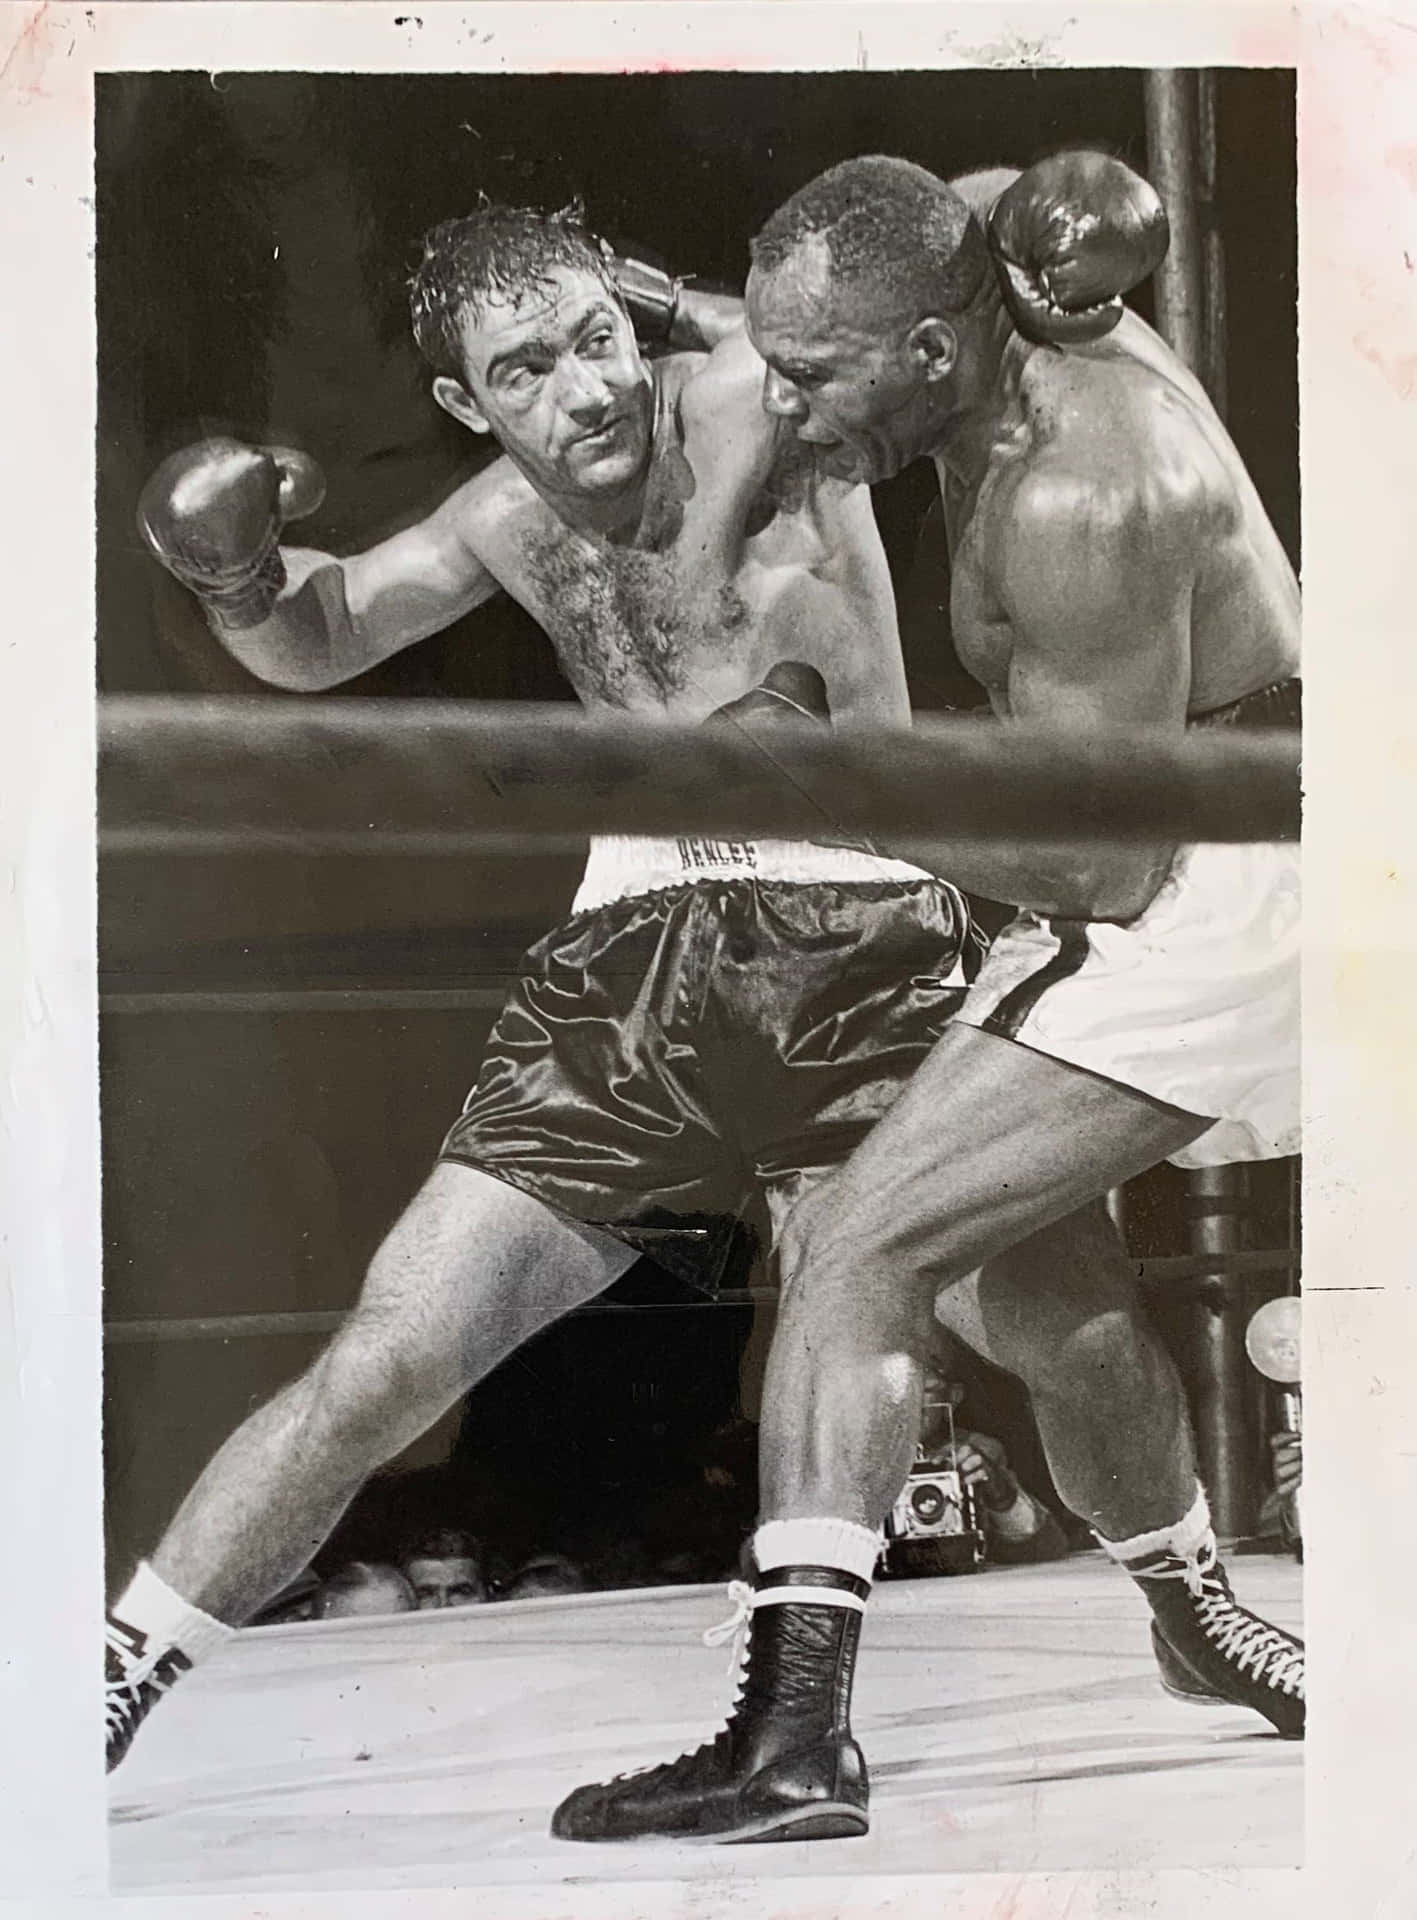 Jersey Joe Walcott Vs Rocky Marciano Fight In Philadelphia Wallpaper